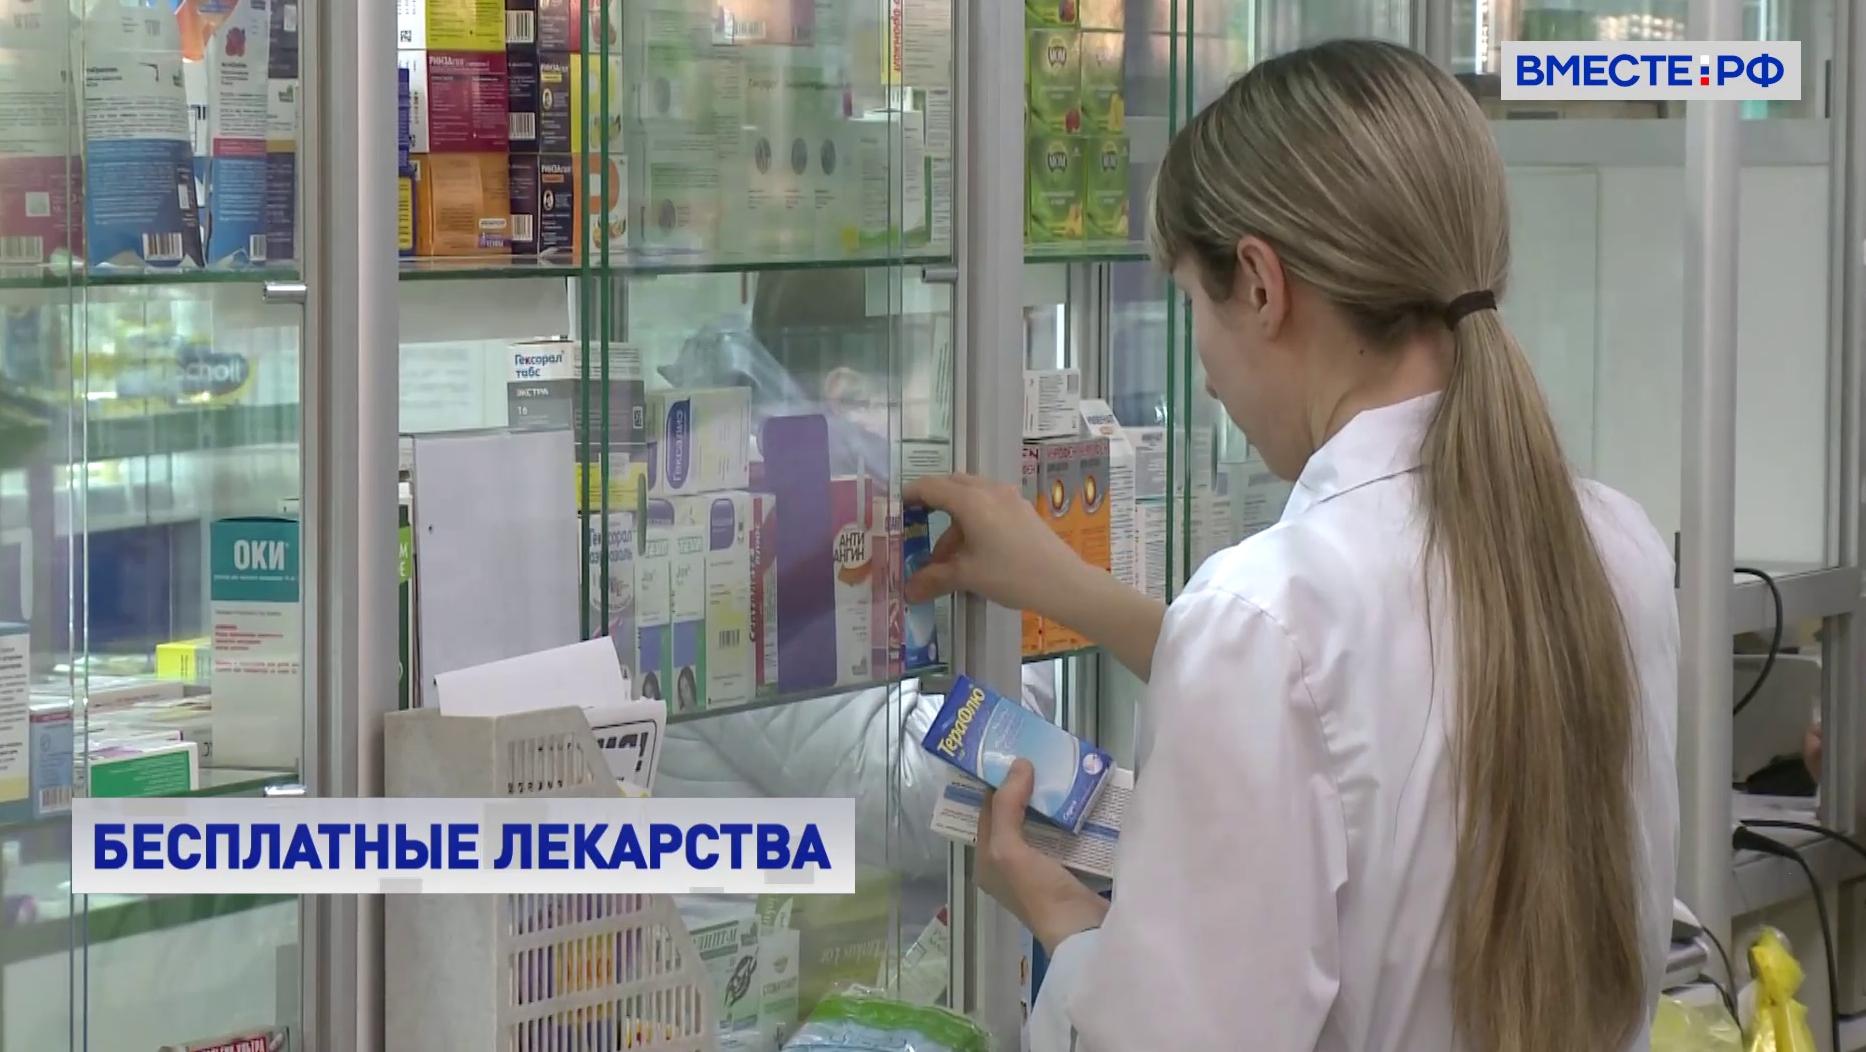 Получить бесплатные лекарства в москве. Новые правила выдачи бесплатных лекарств.